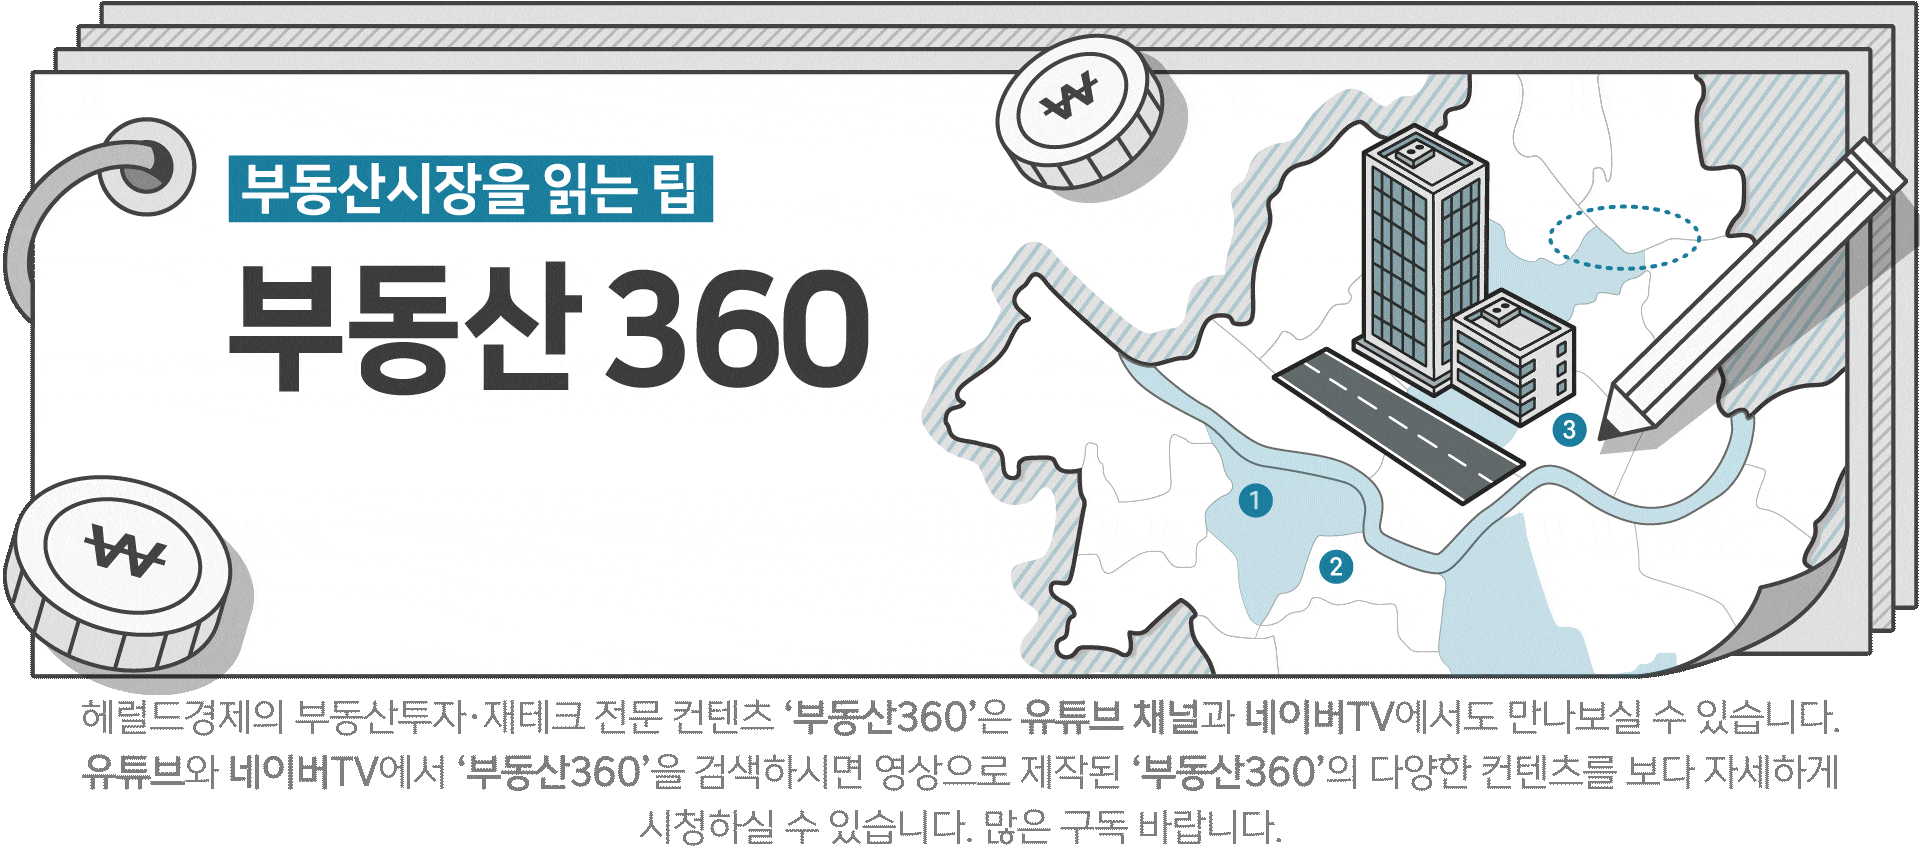 영끌족 몰린 노도강이 가장 많이 빠졌다…서울 아파트 실거래가지수 두달 연속 하락 [부동산360]